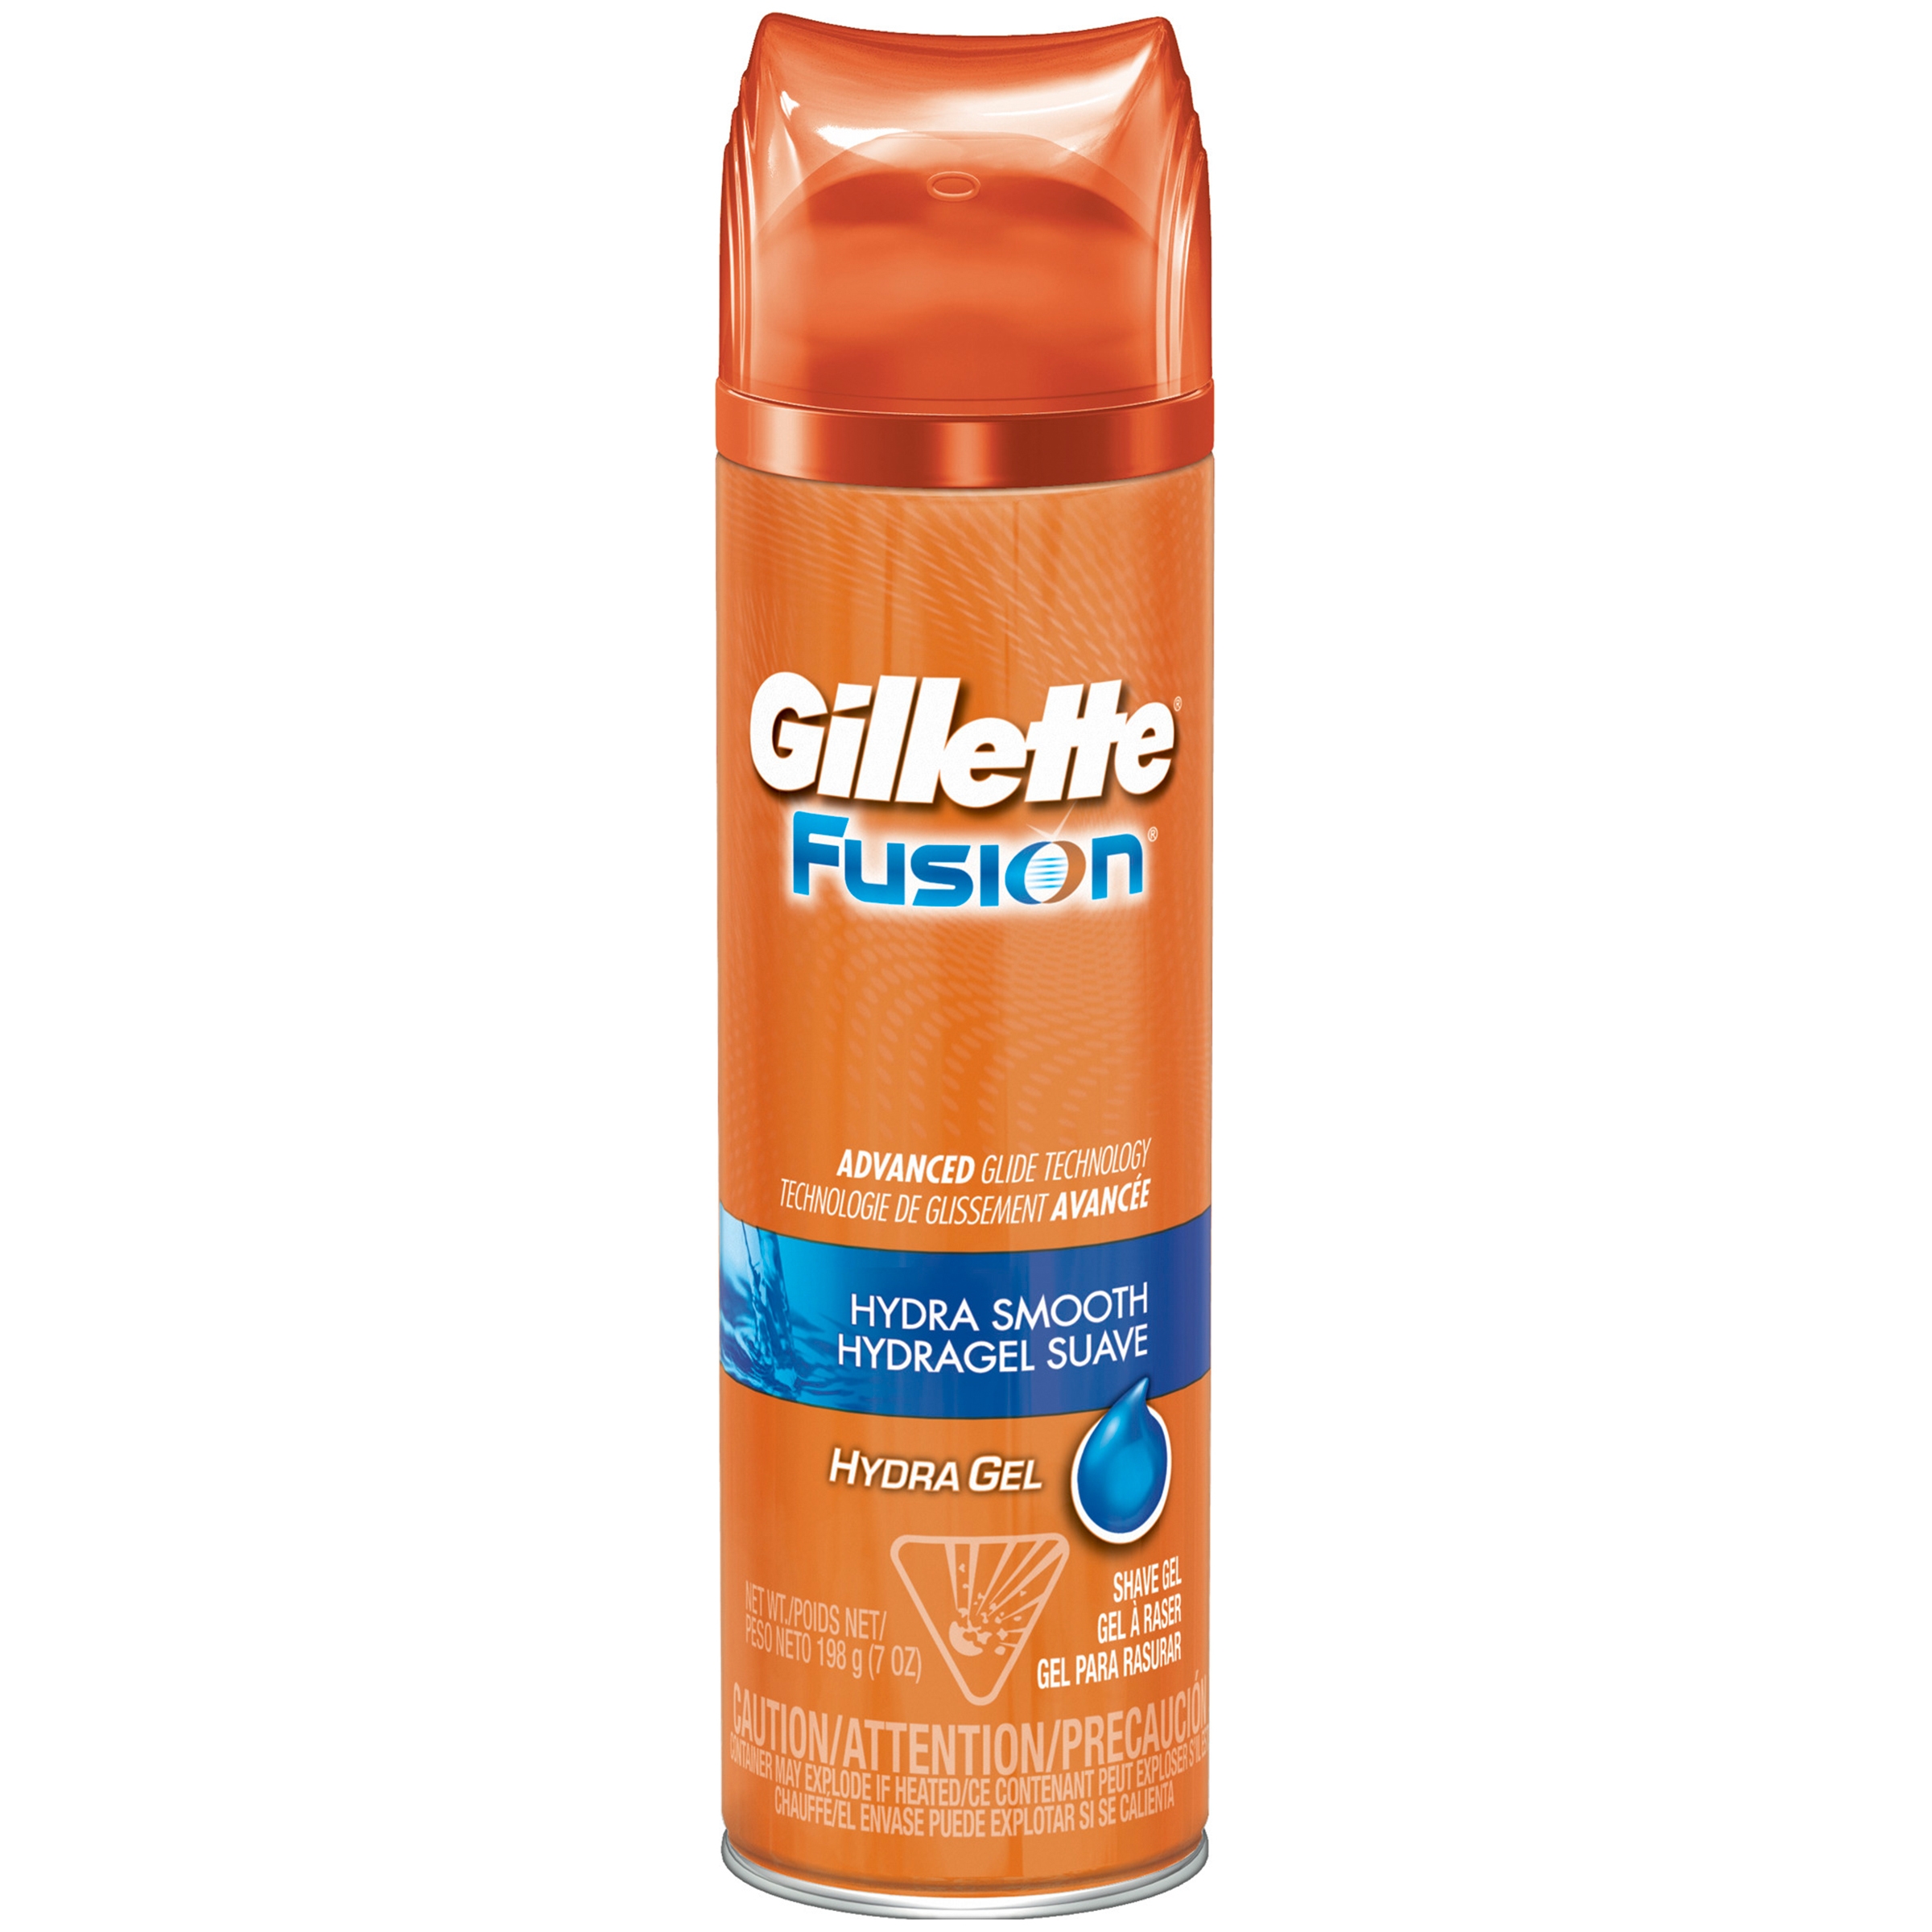 Gillette Fusion Hydra Gel - Smooth Men's Shave Gel, 7oz - image 1 of 6